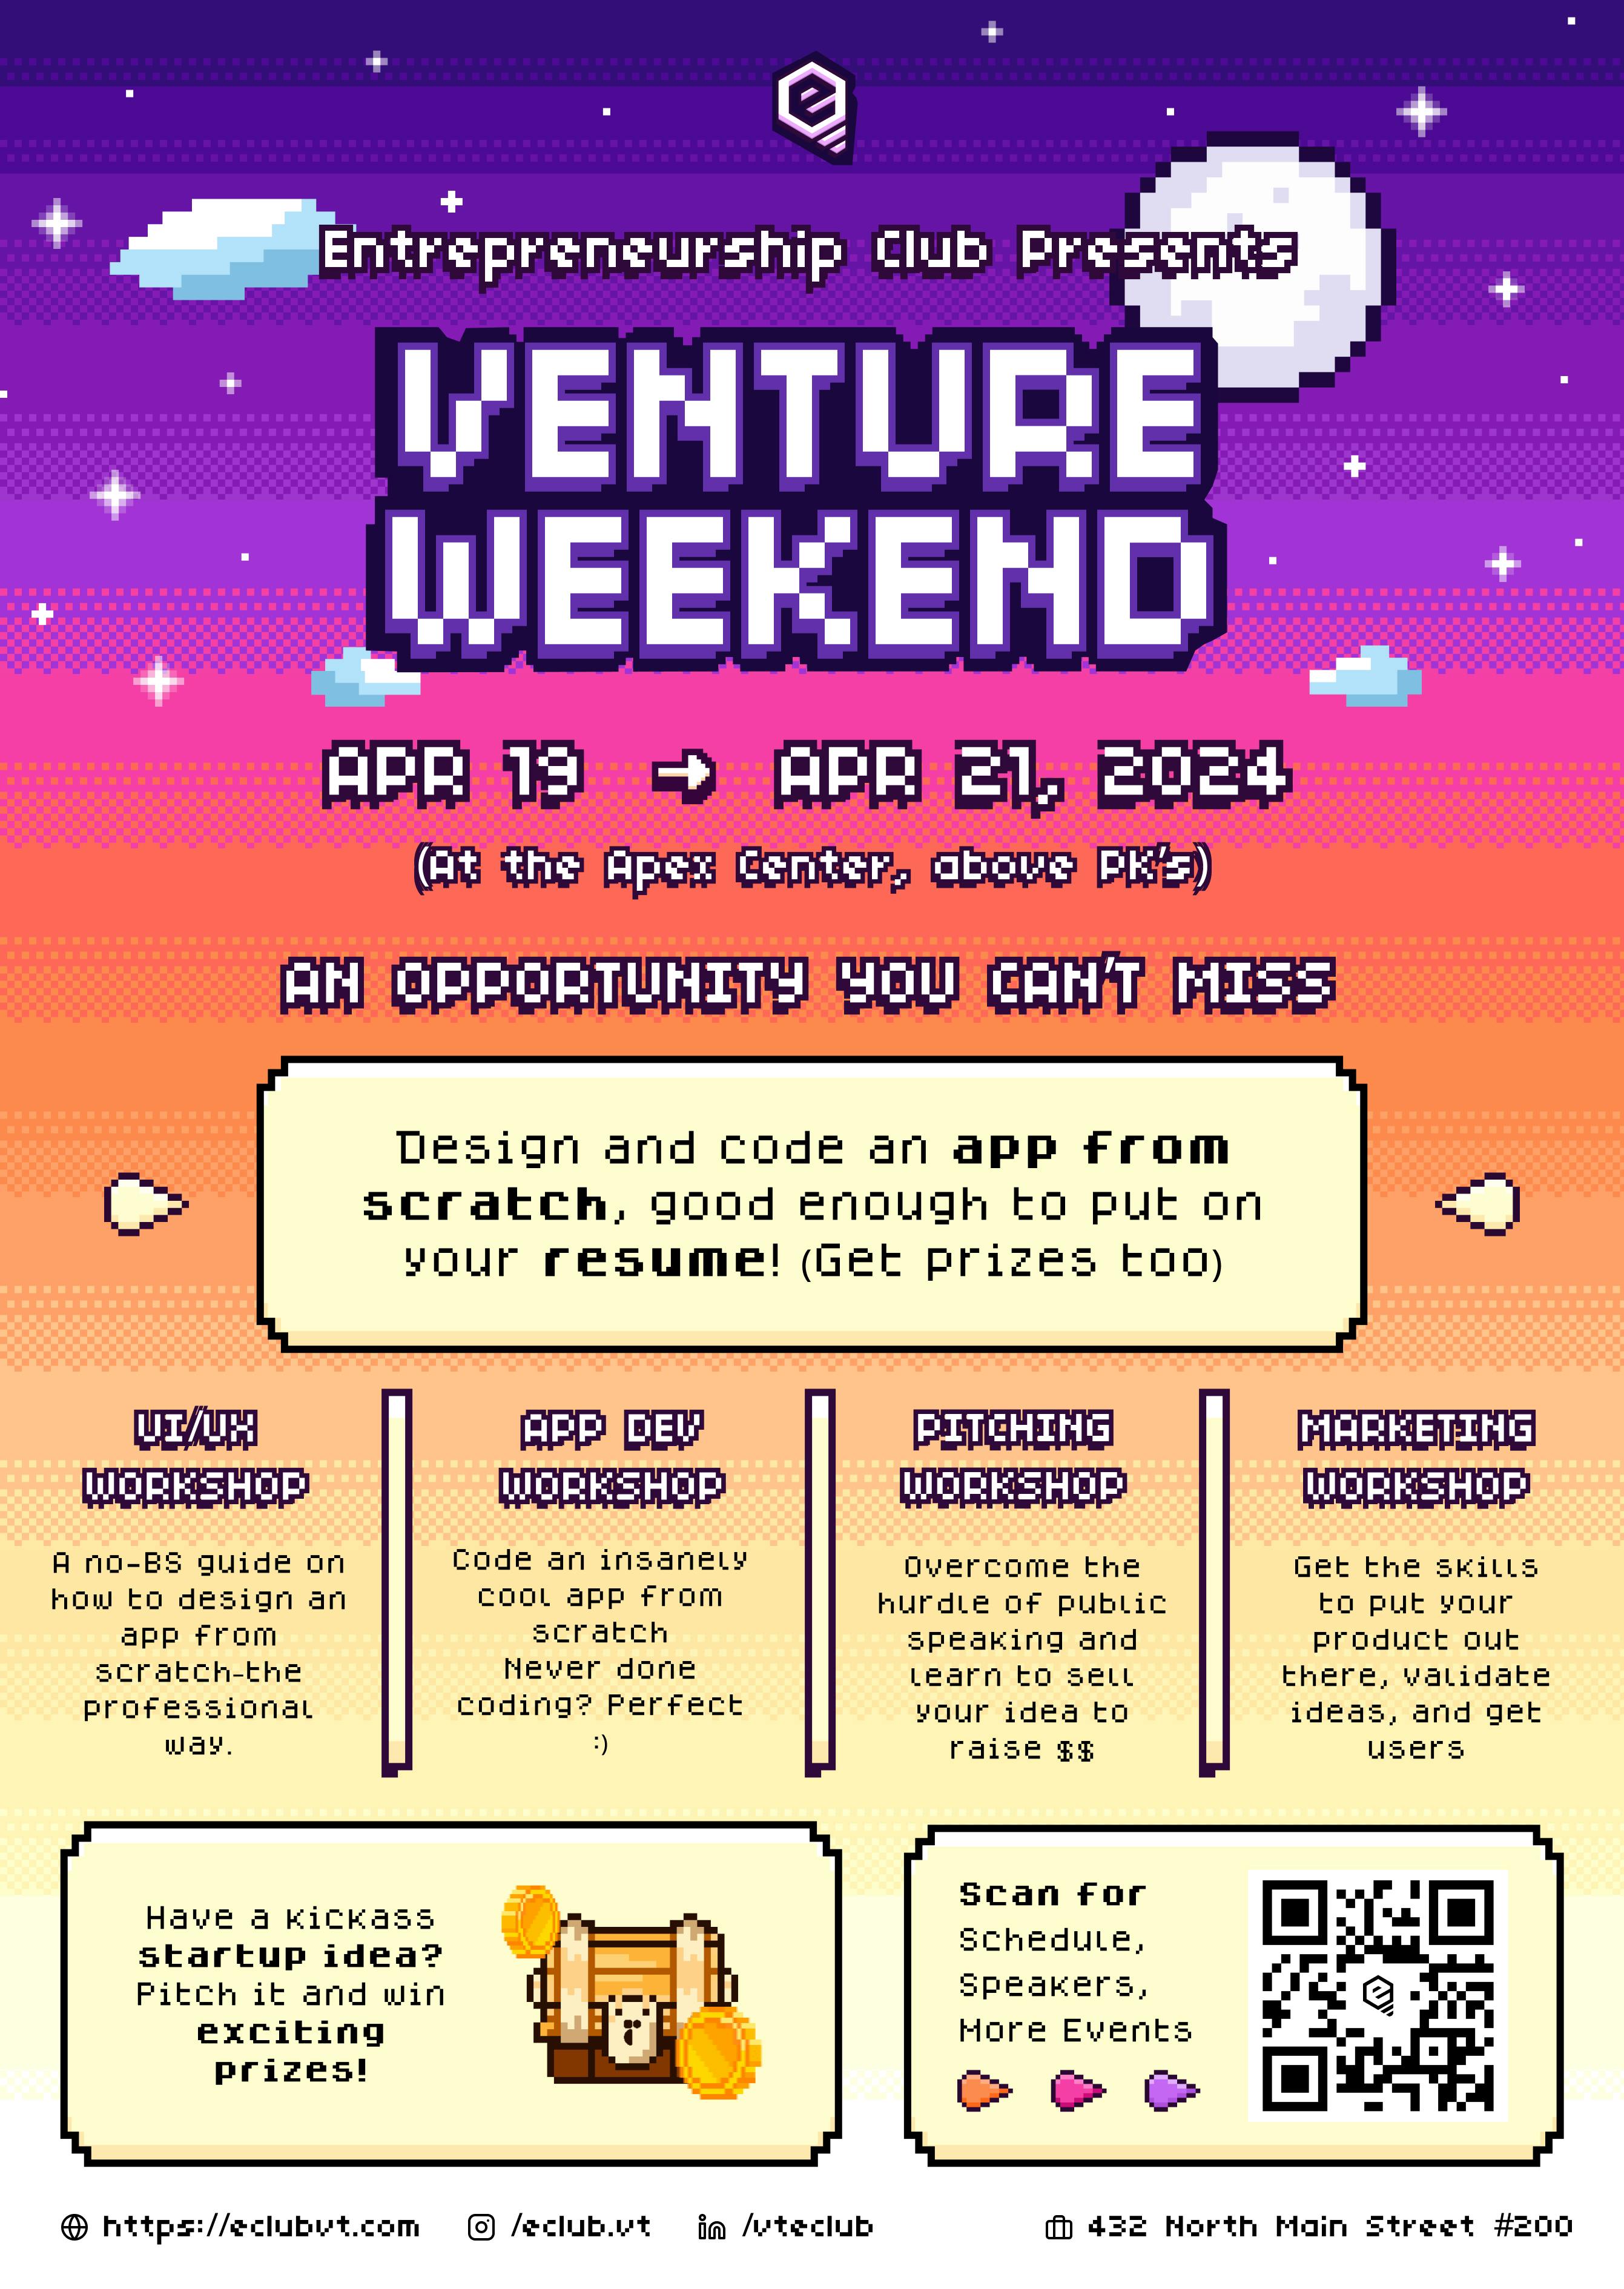 Venture Weekend Flyer